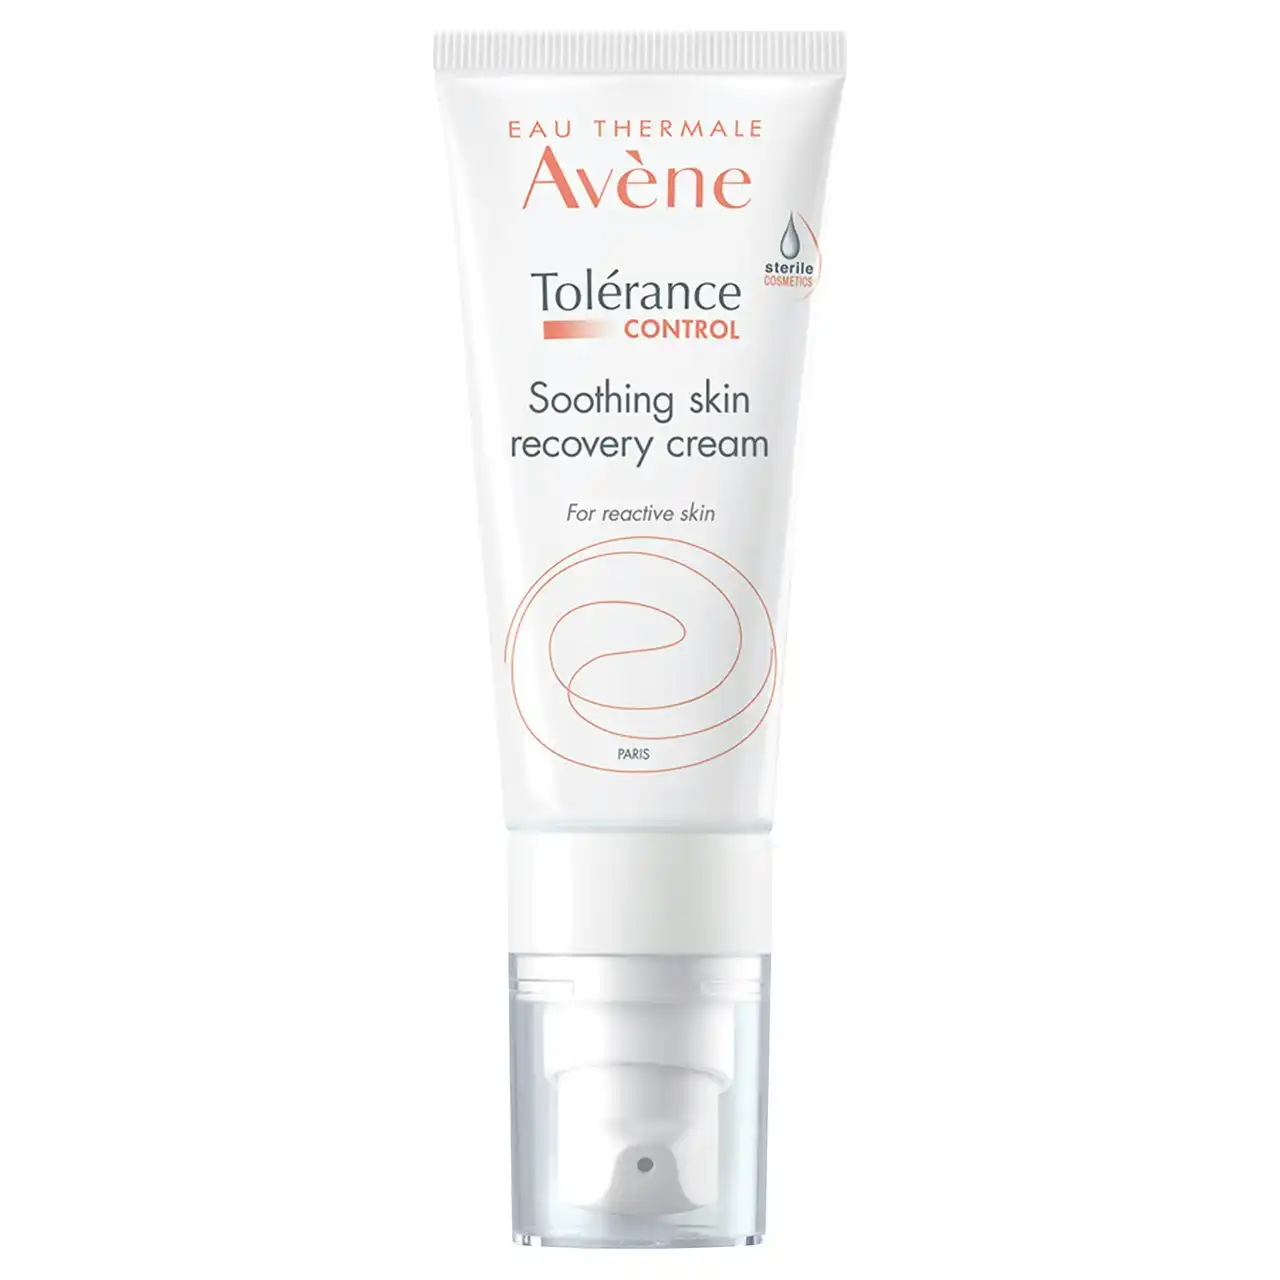 Av ne Tolerance CONTROL Soothing Skin Recovery Cream 40ml - Moisturiser for hypersensitive skin